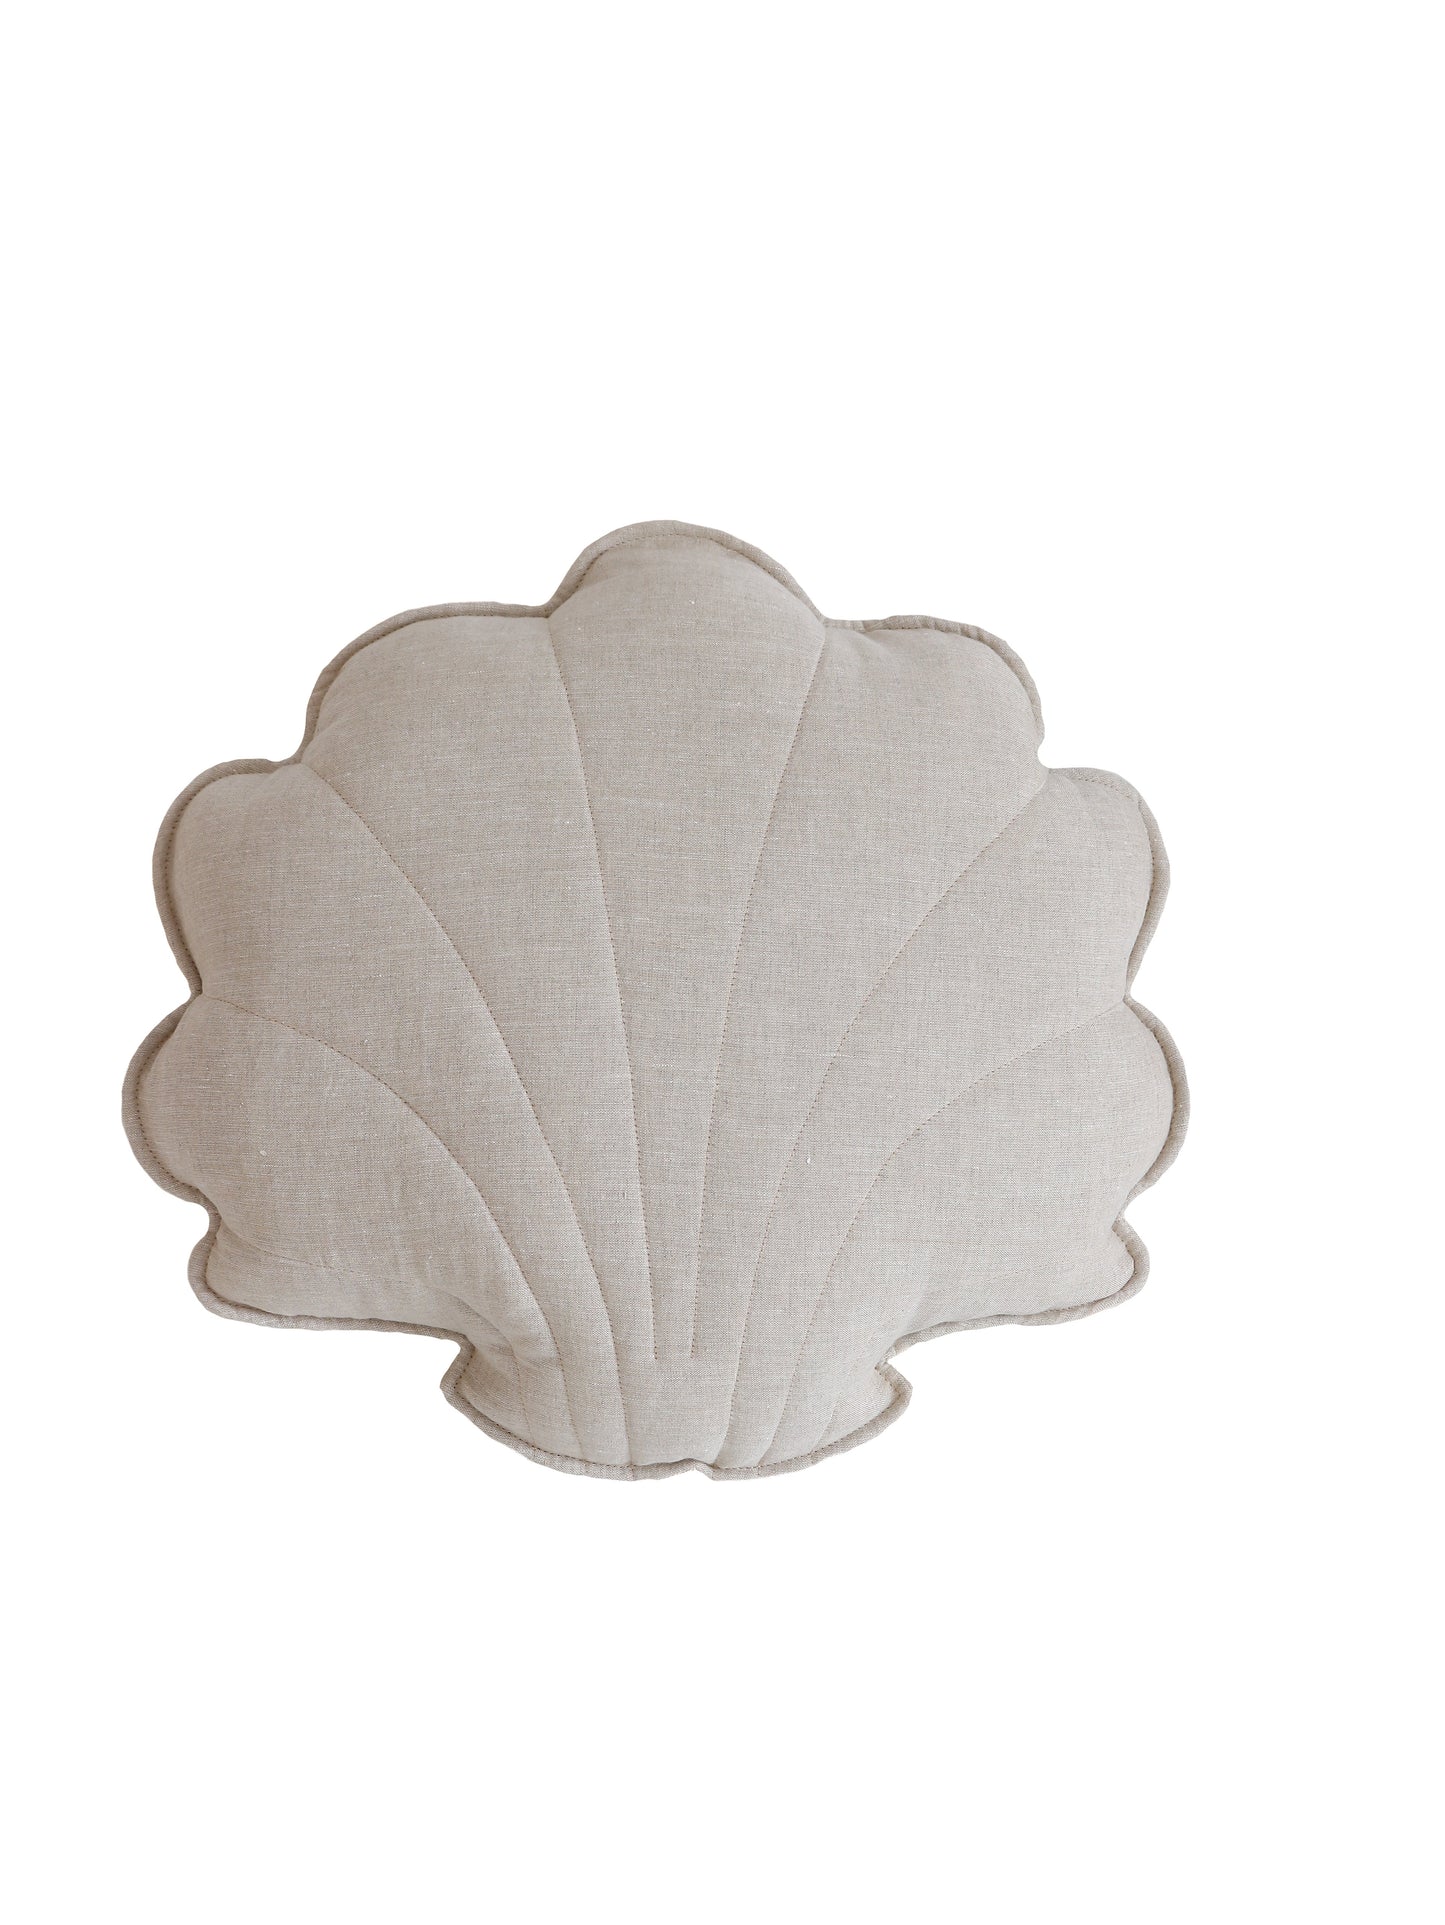 Linen "Sand” Shell Pillow